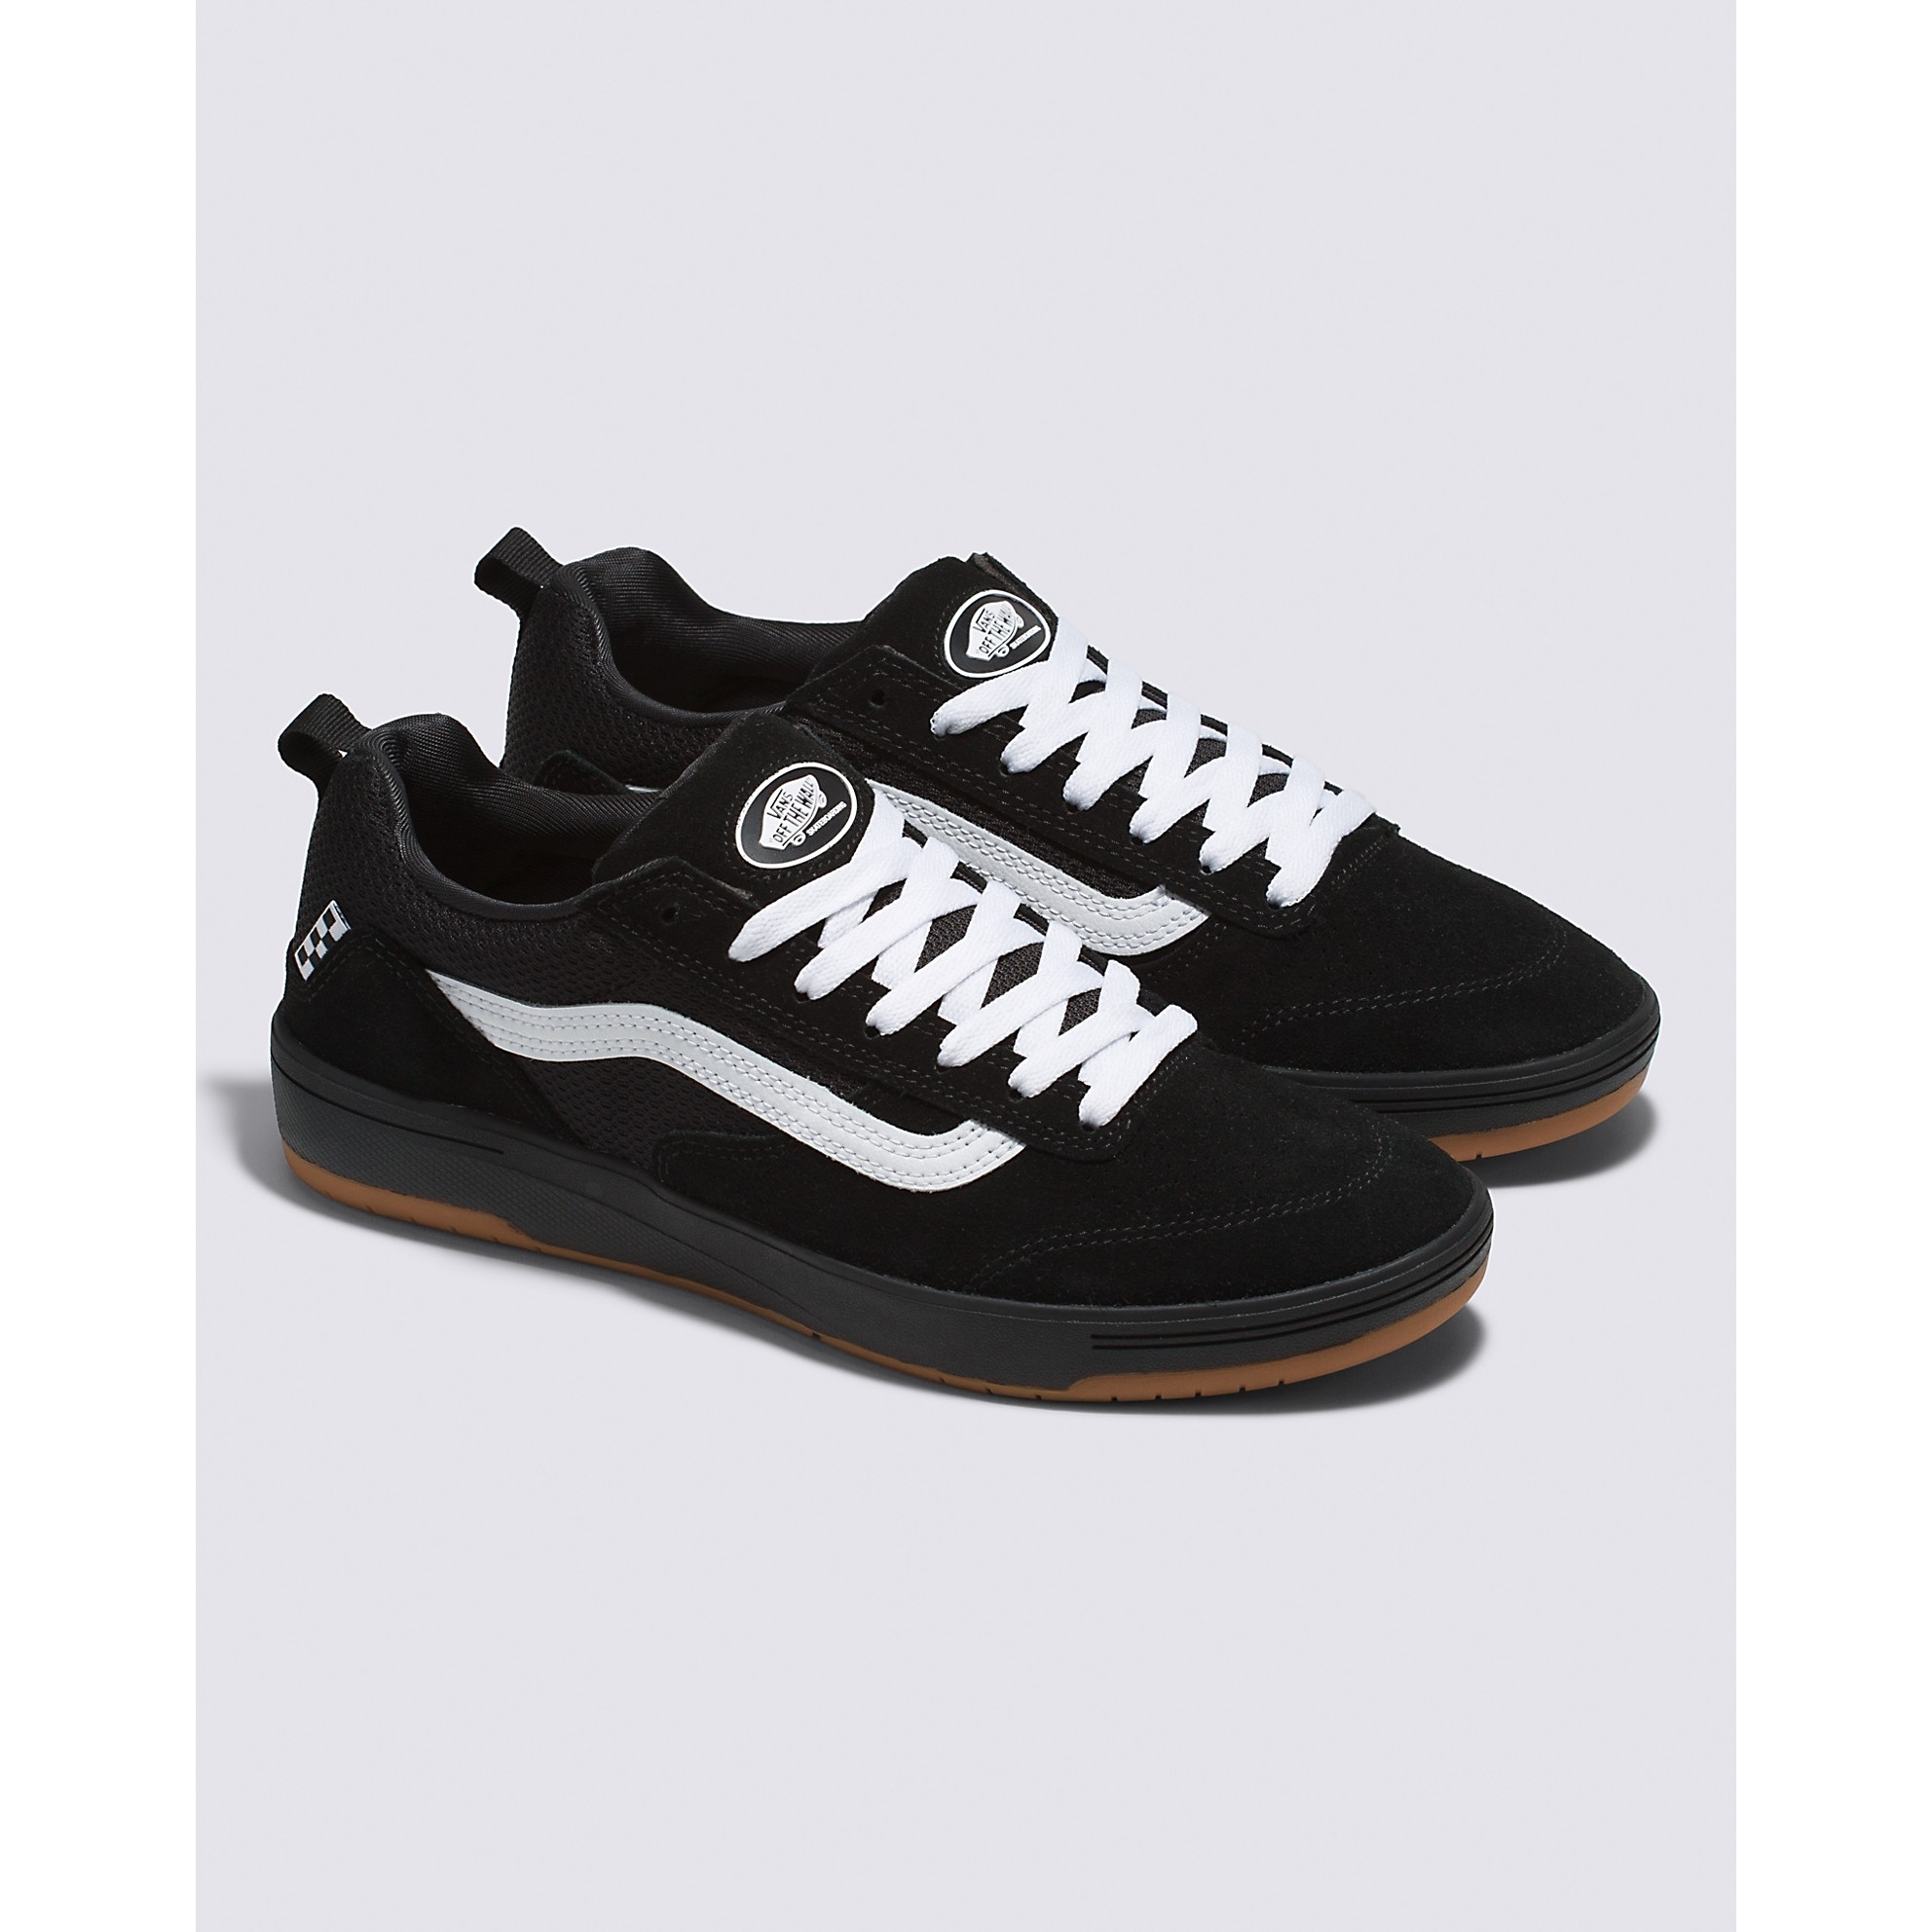 Zahba Shoe (Black/White)